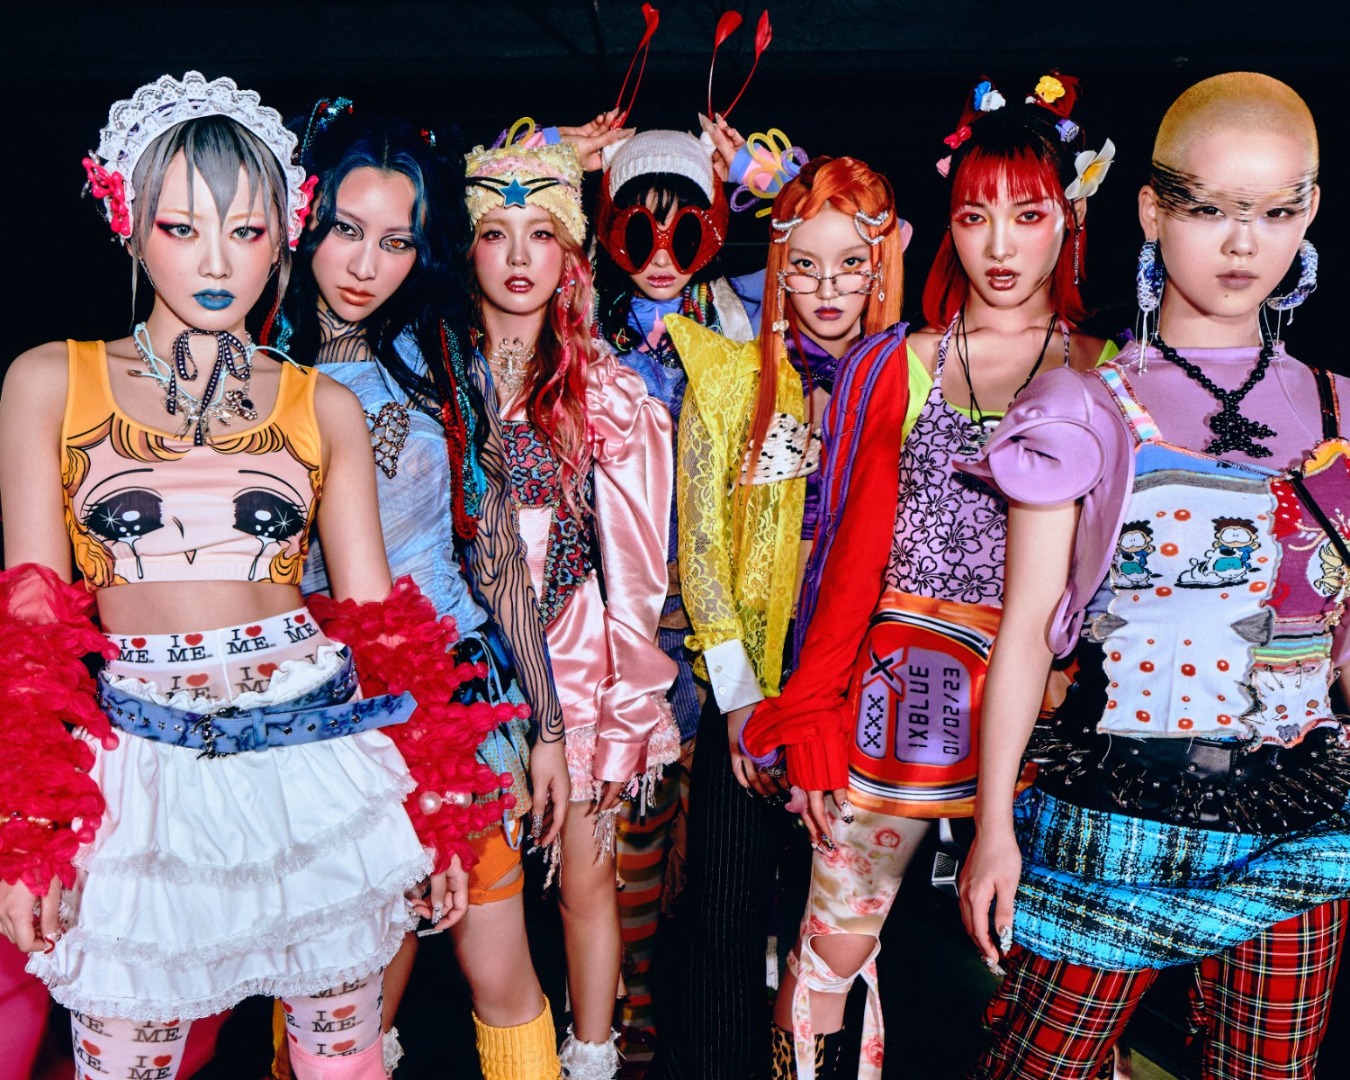 ประวัติ “XG” เกิร์ลกรุ๊ปมาแรงสัญชาติญี่ปุ่น ทลายทุกขีดจำกัด ด้วยแนวเพลง X-POP